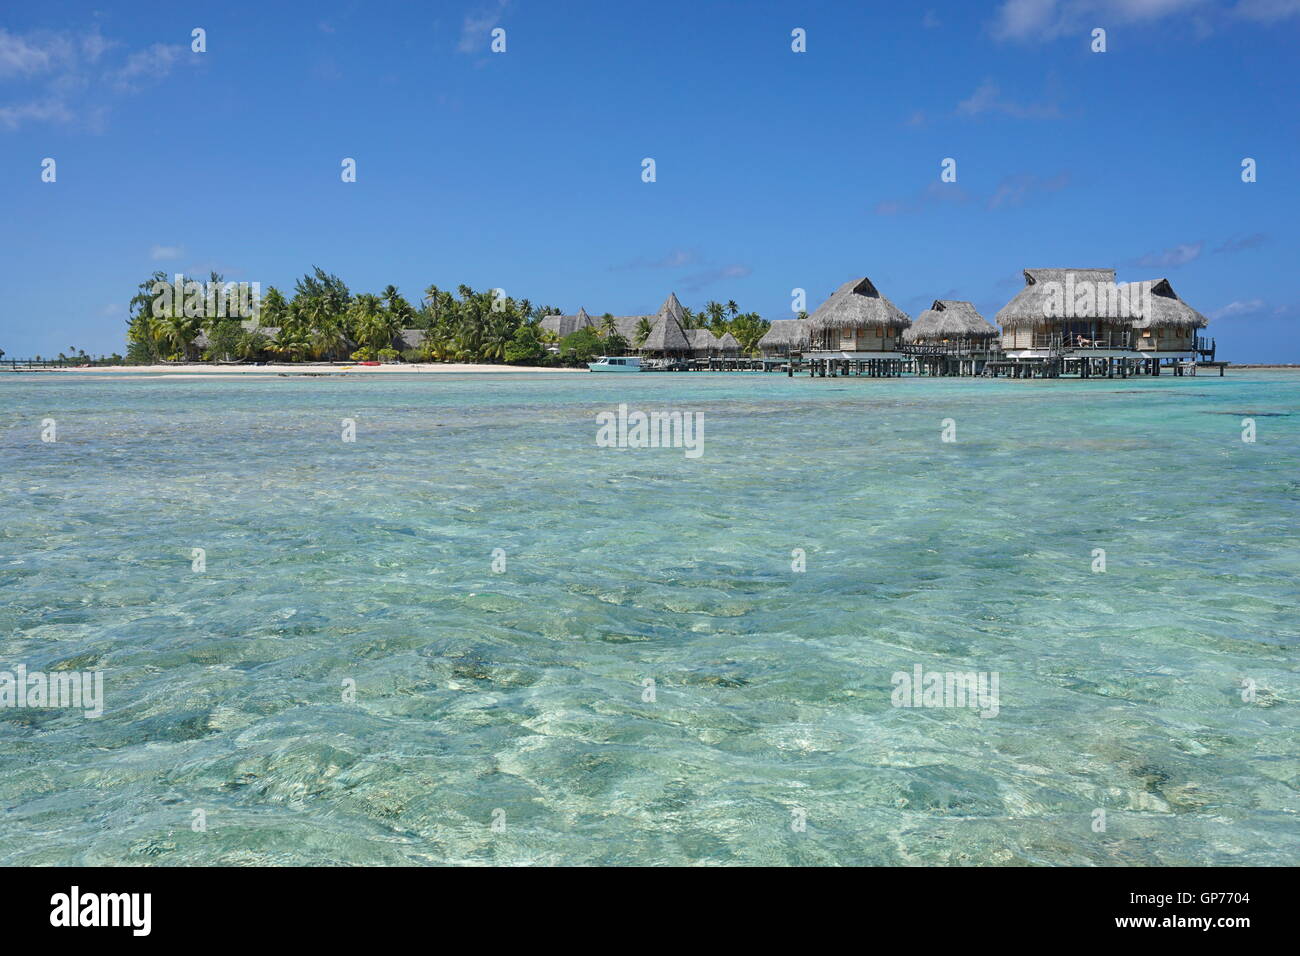 Tropical Resort sur un îlot avec bungalows sur pilotis, l'atoll de Tikehau, archipel des Tuamotu, en Polynésie française, l'océan Pacifique Banque D'Images